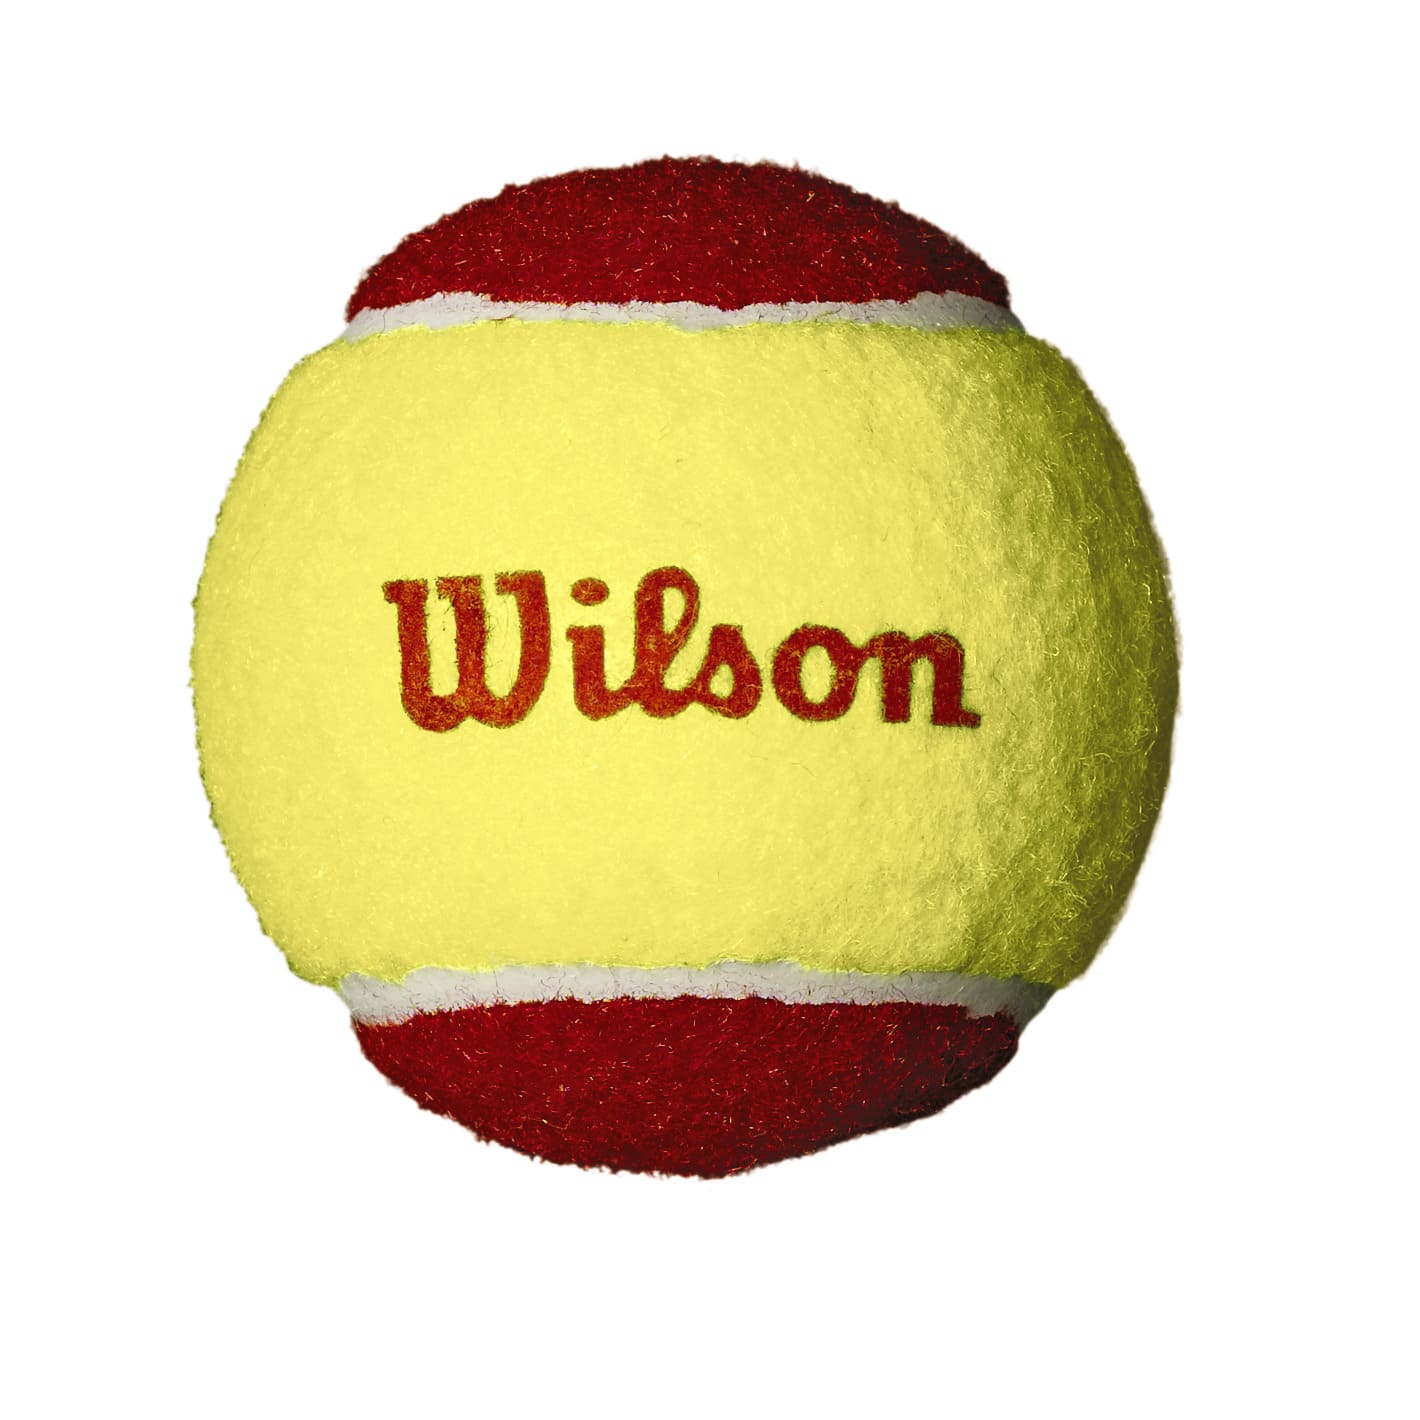 WILSON STARTER TENNIS BALLS